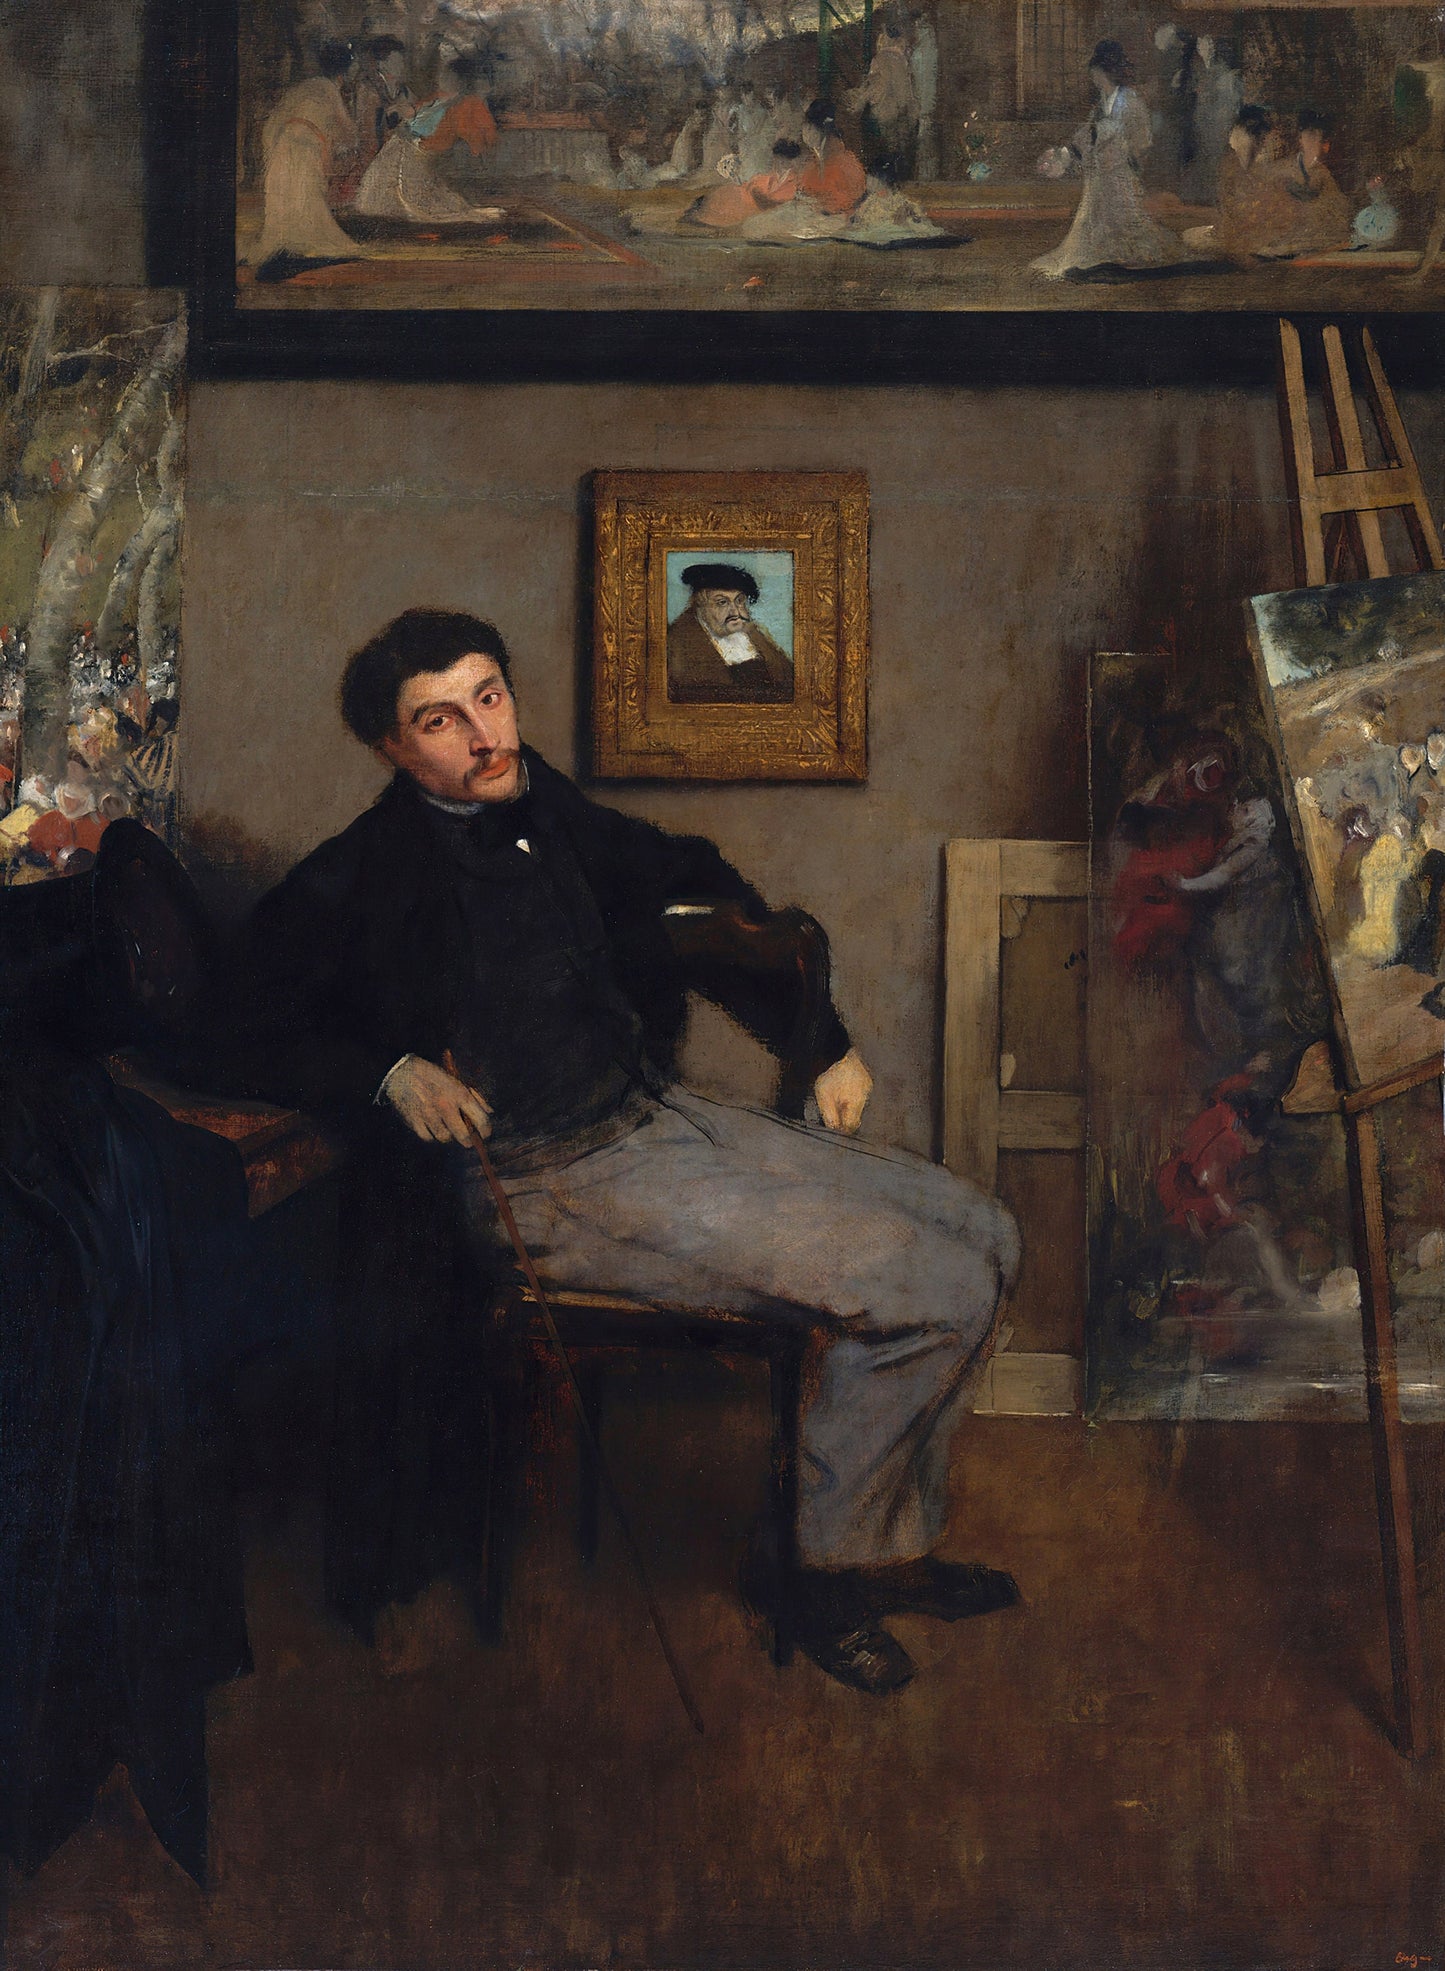 Edgar Degas Impressionist Paintings Set 3 [30 Images]